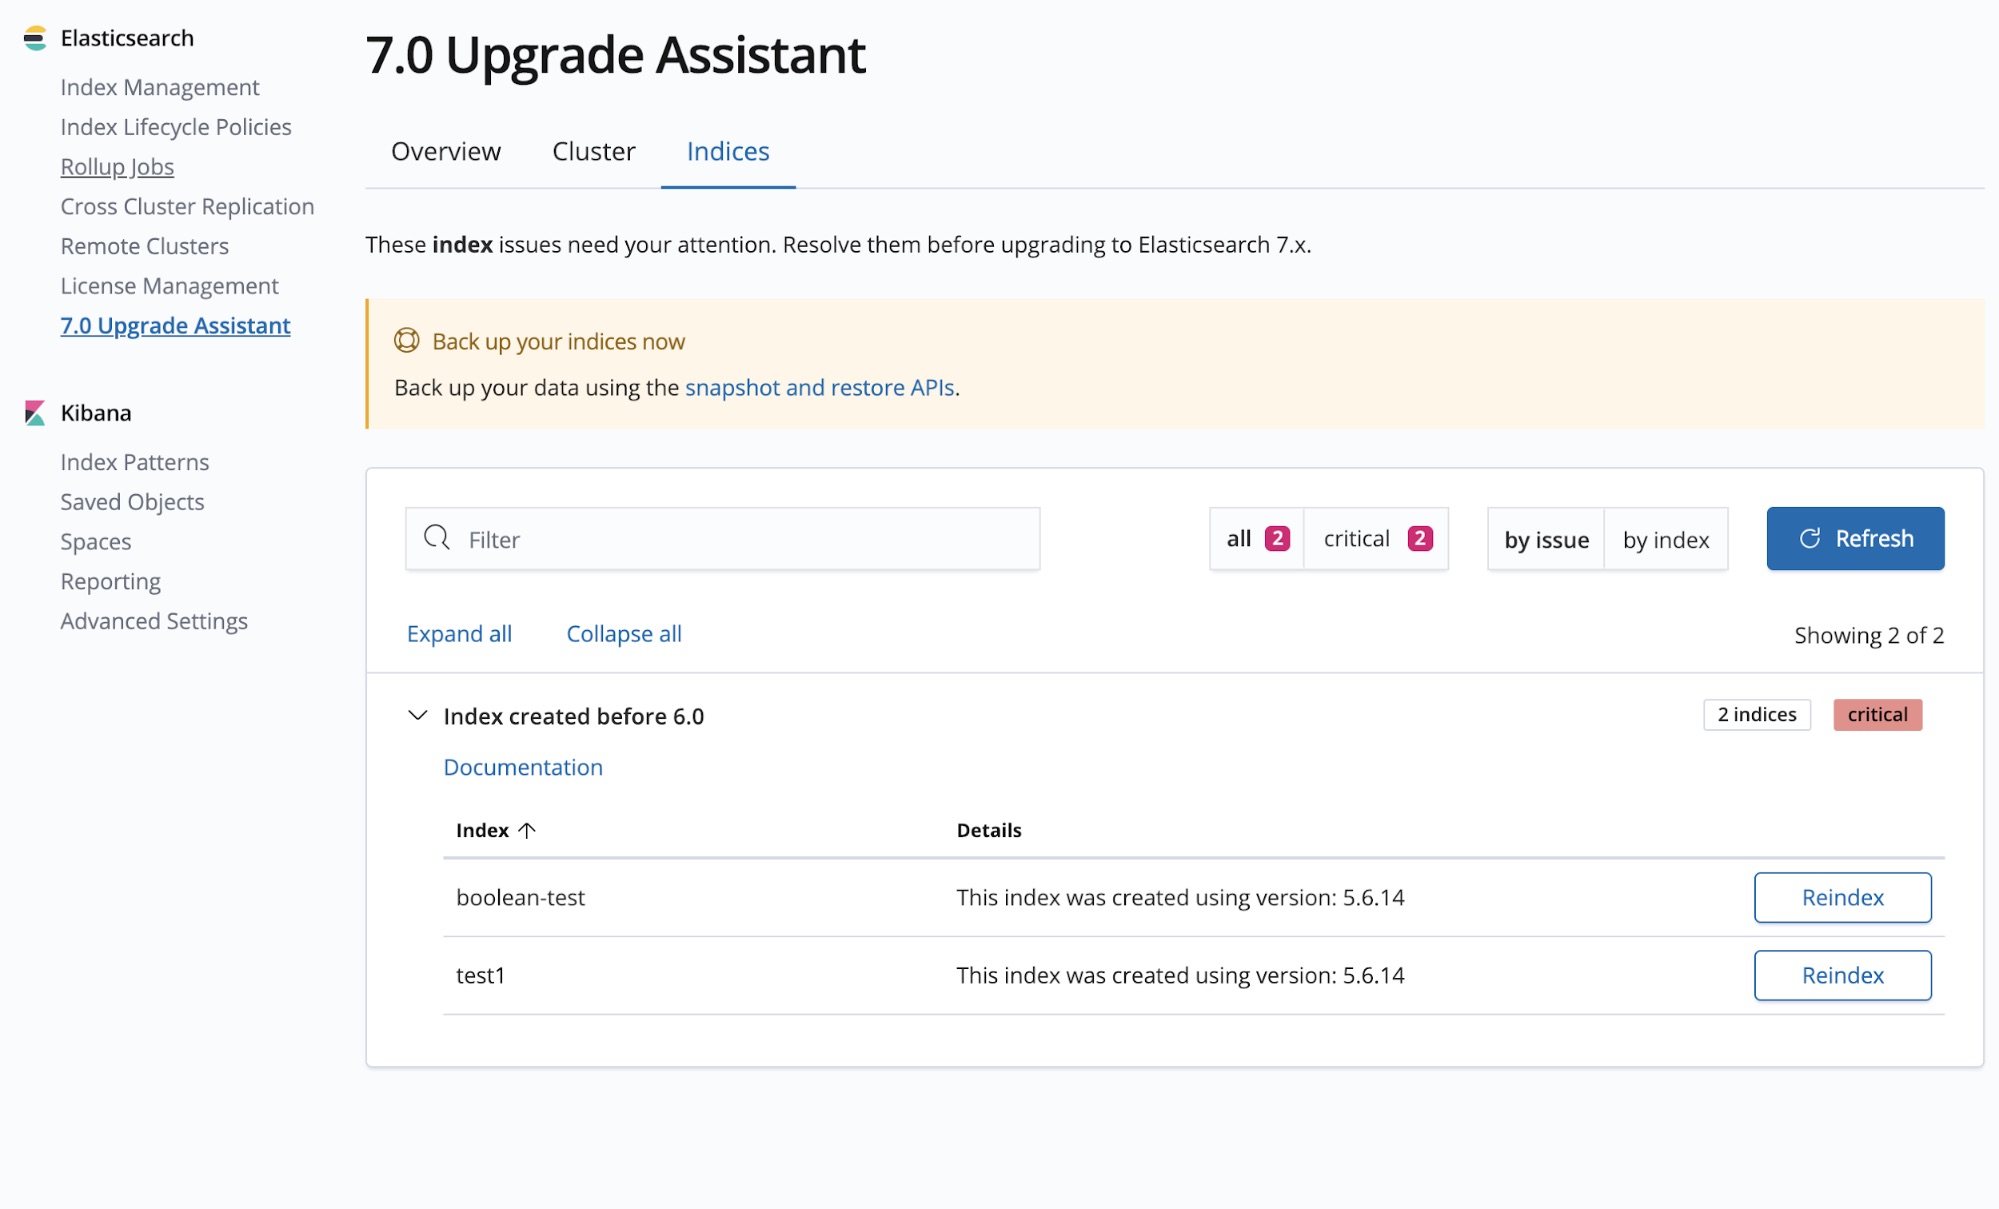 Reindexing in the Kibana 6.7 Upgrade Assistant